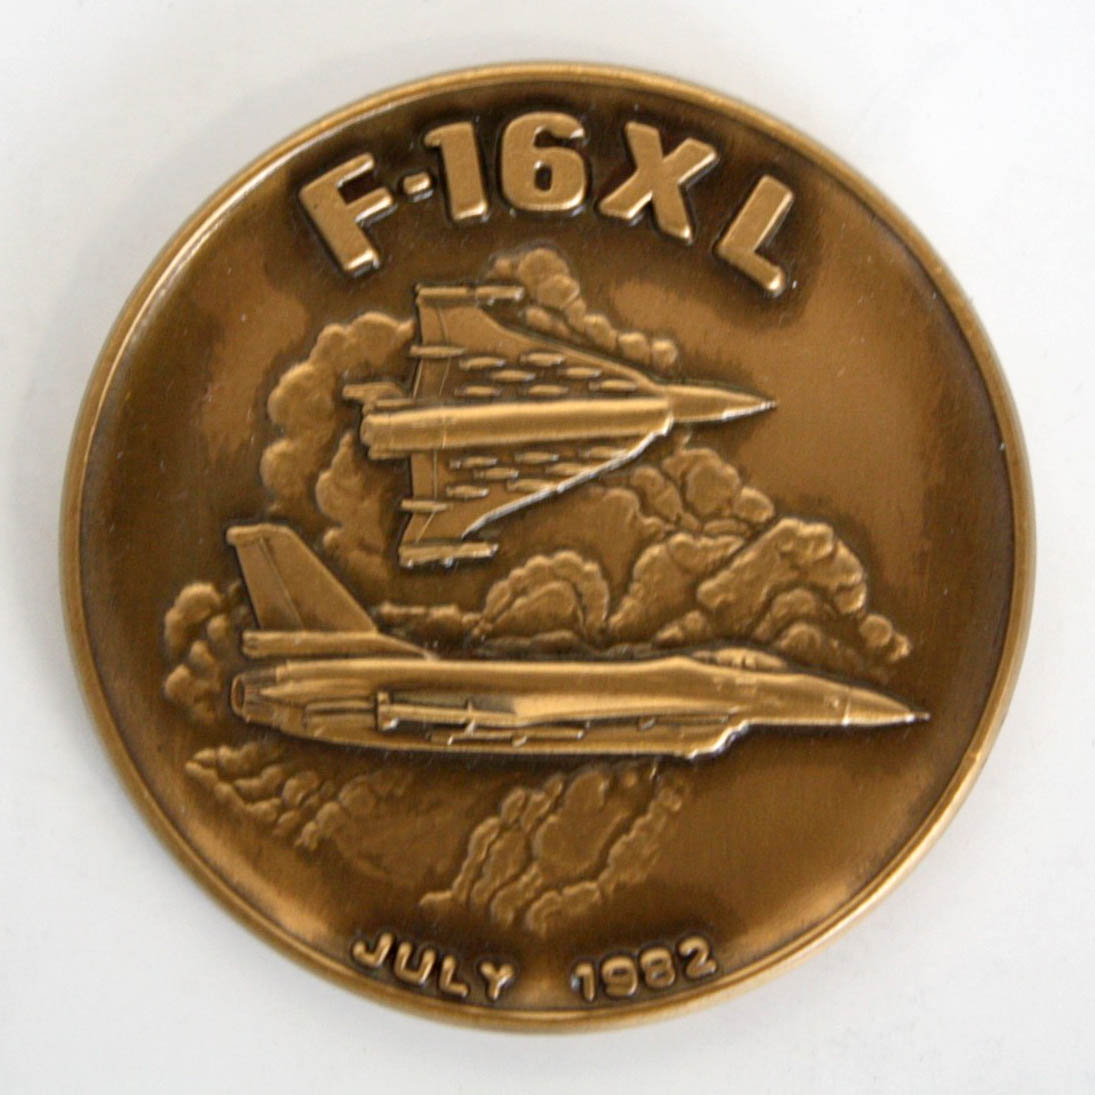 F-16XL Medallion